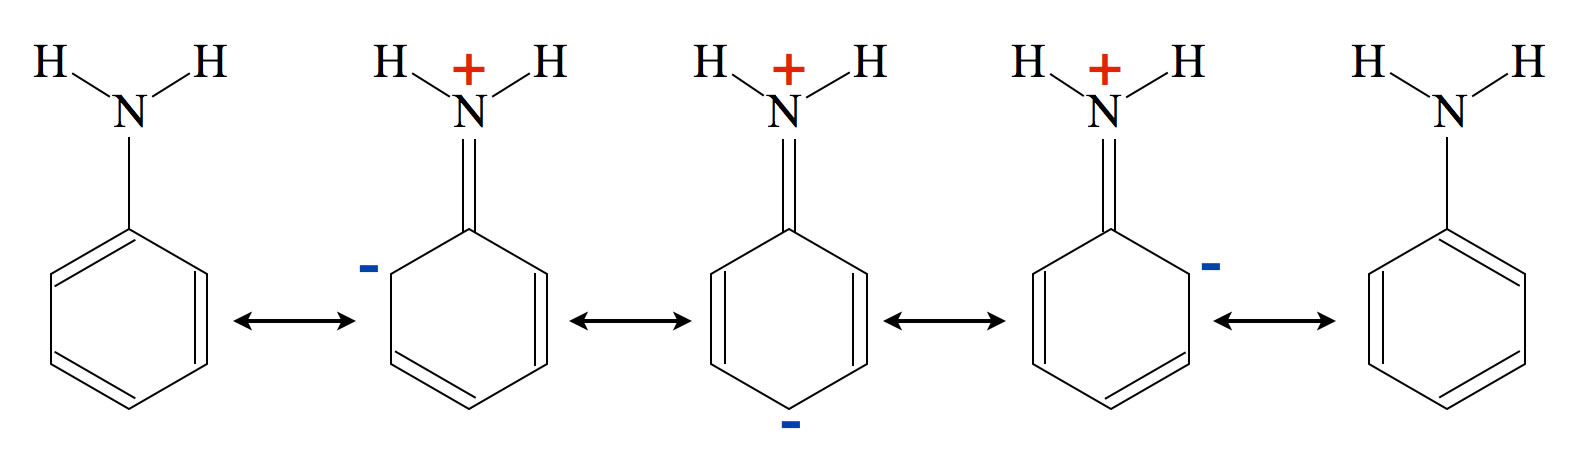 Fünf Resonanzstrukturen des Anilin-Moleküls